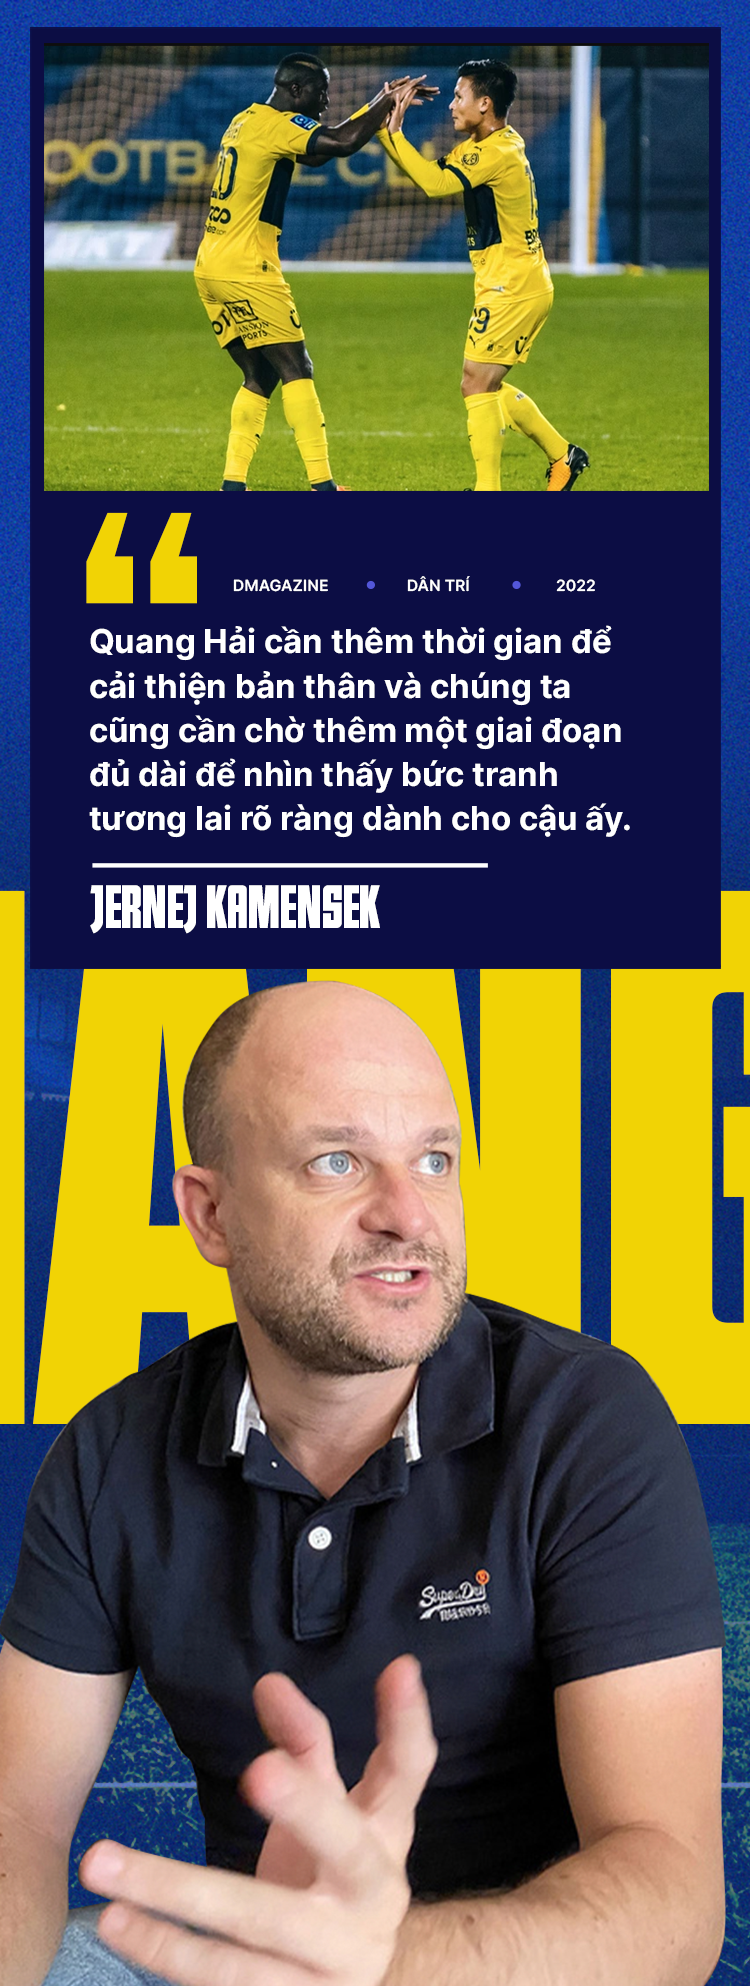 Chuyên gia Kamensek: Bàn thắng cho Pau FC chưa tạo cú hích với Quang Hải - 8